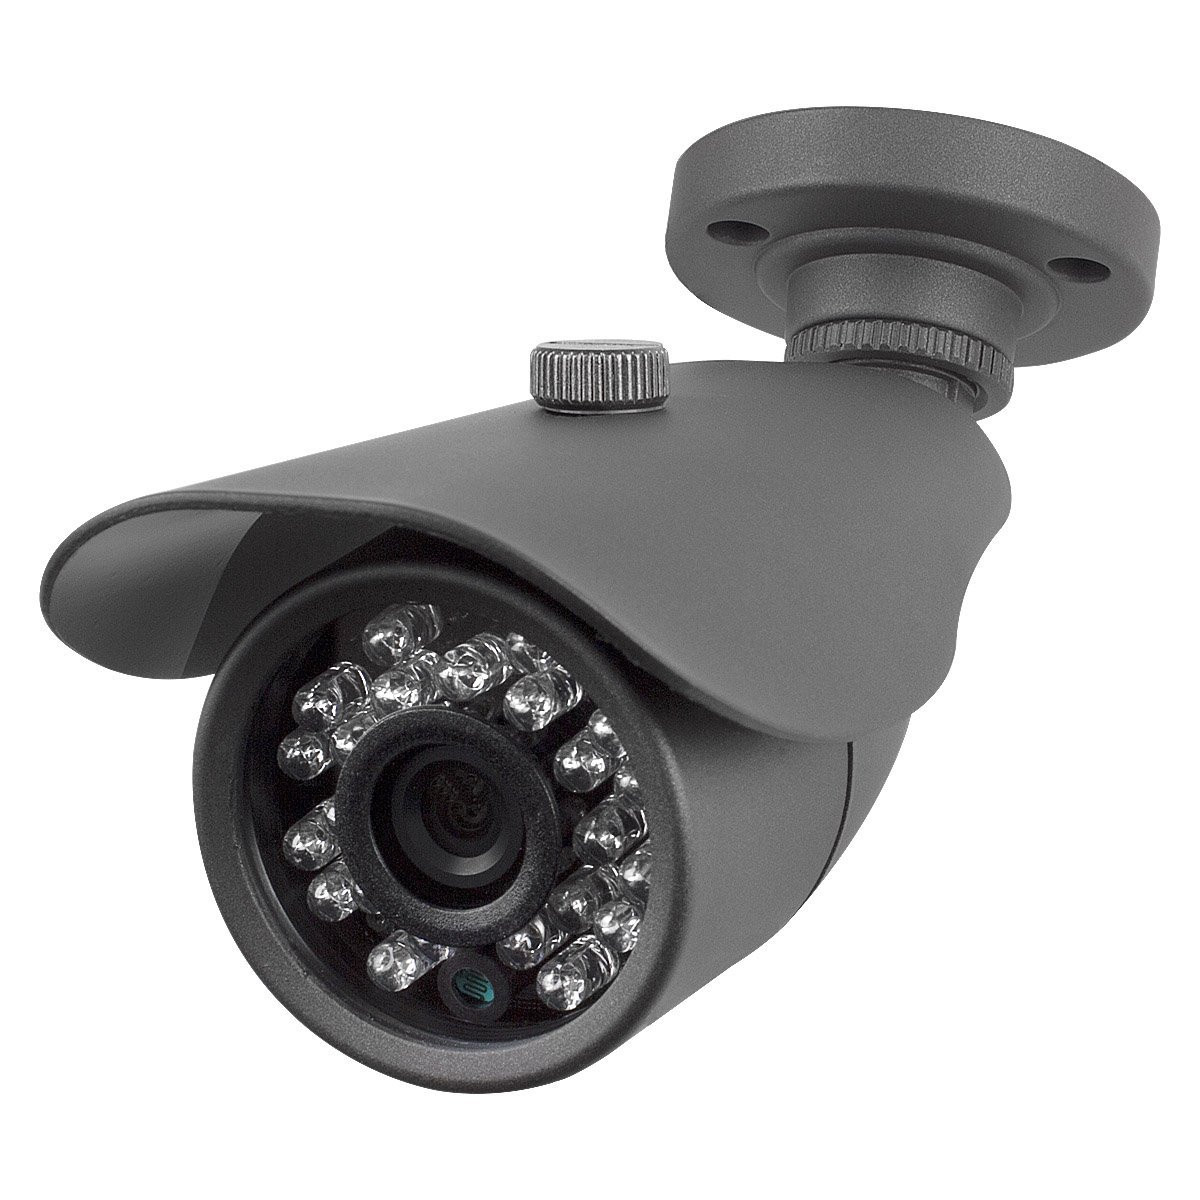 DIY Outdoor Security Camera
 Best Vision SK DVR DIY 8 Channel DVR Security System